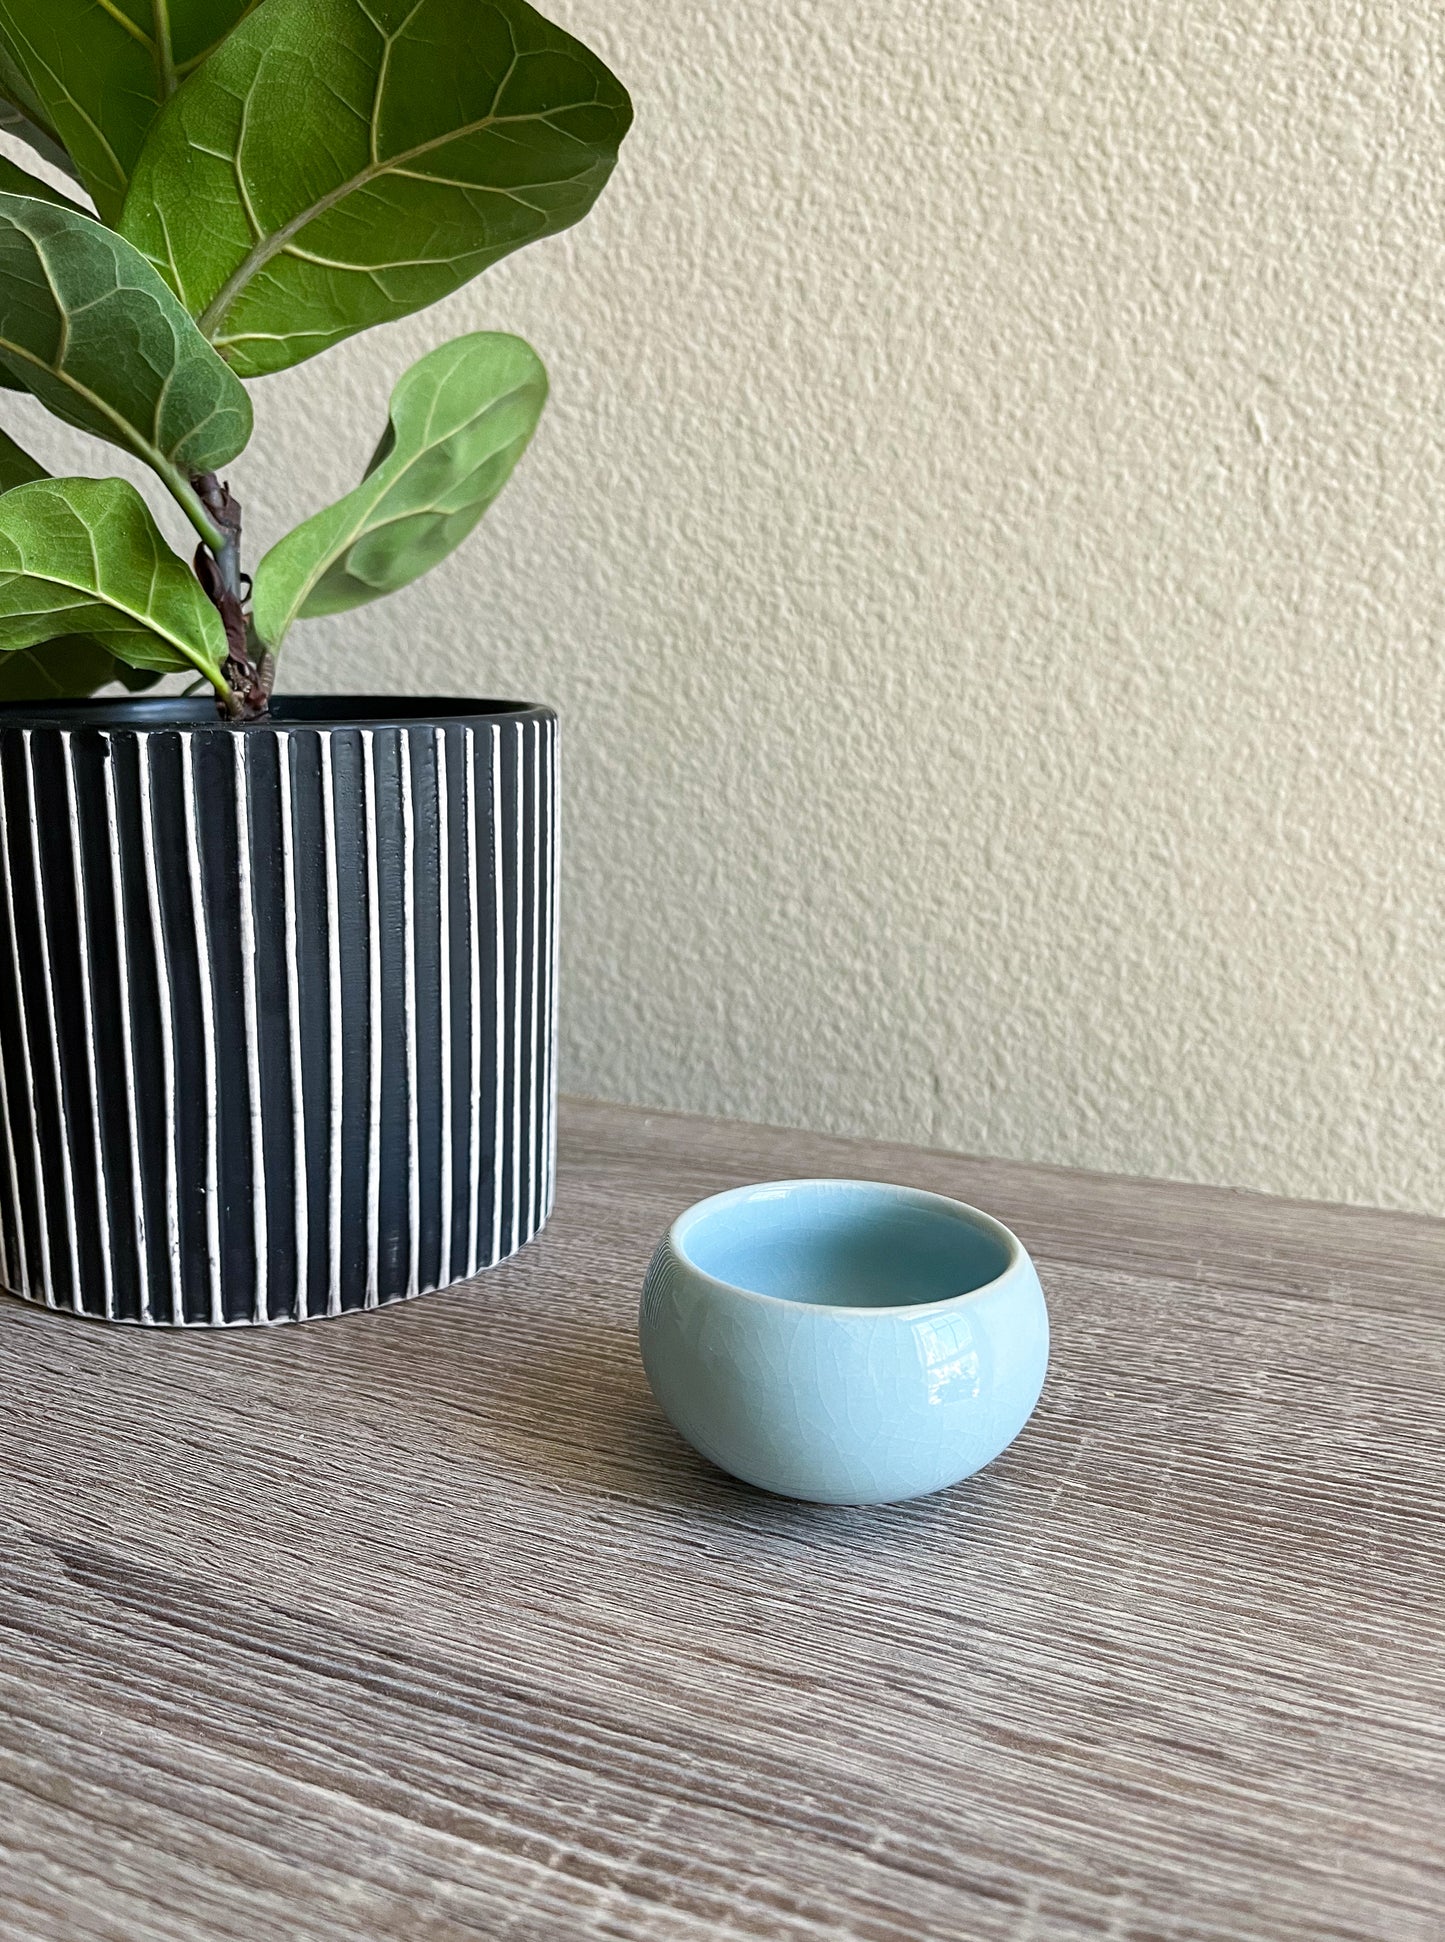 Handcrafted Sky-blue Agate-Glaze Ceramic Matcha Teacup (Ru Yao)